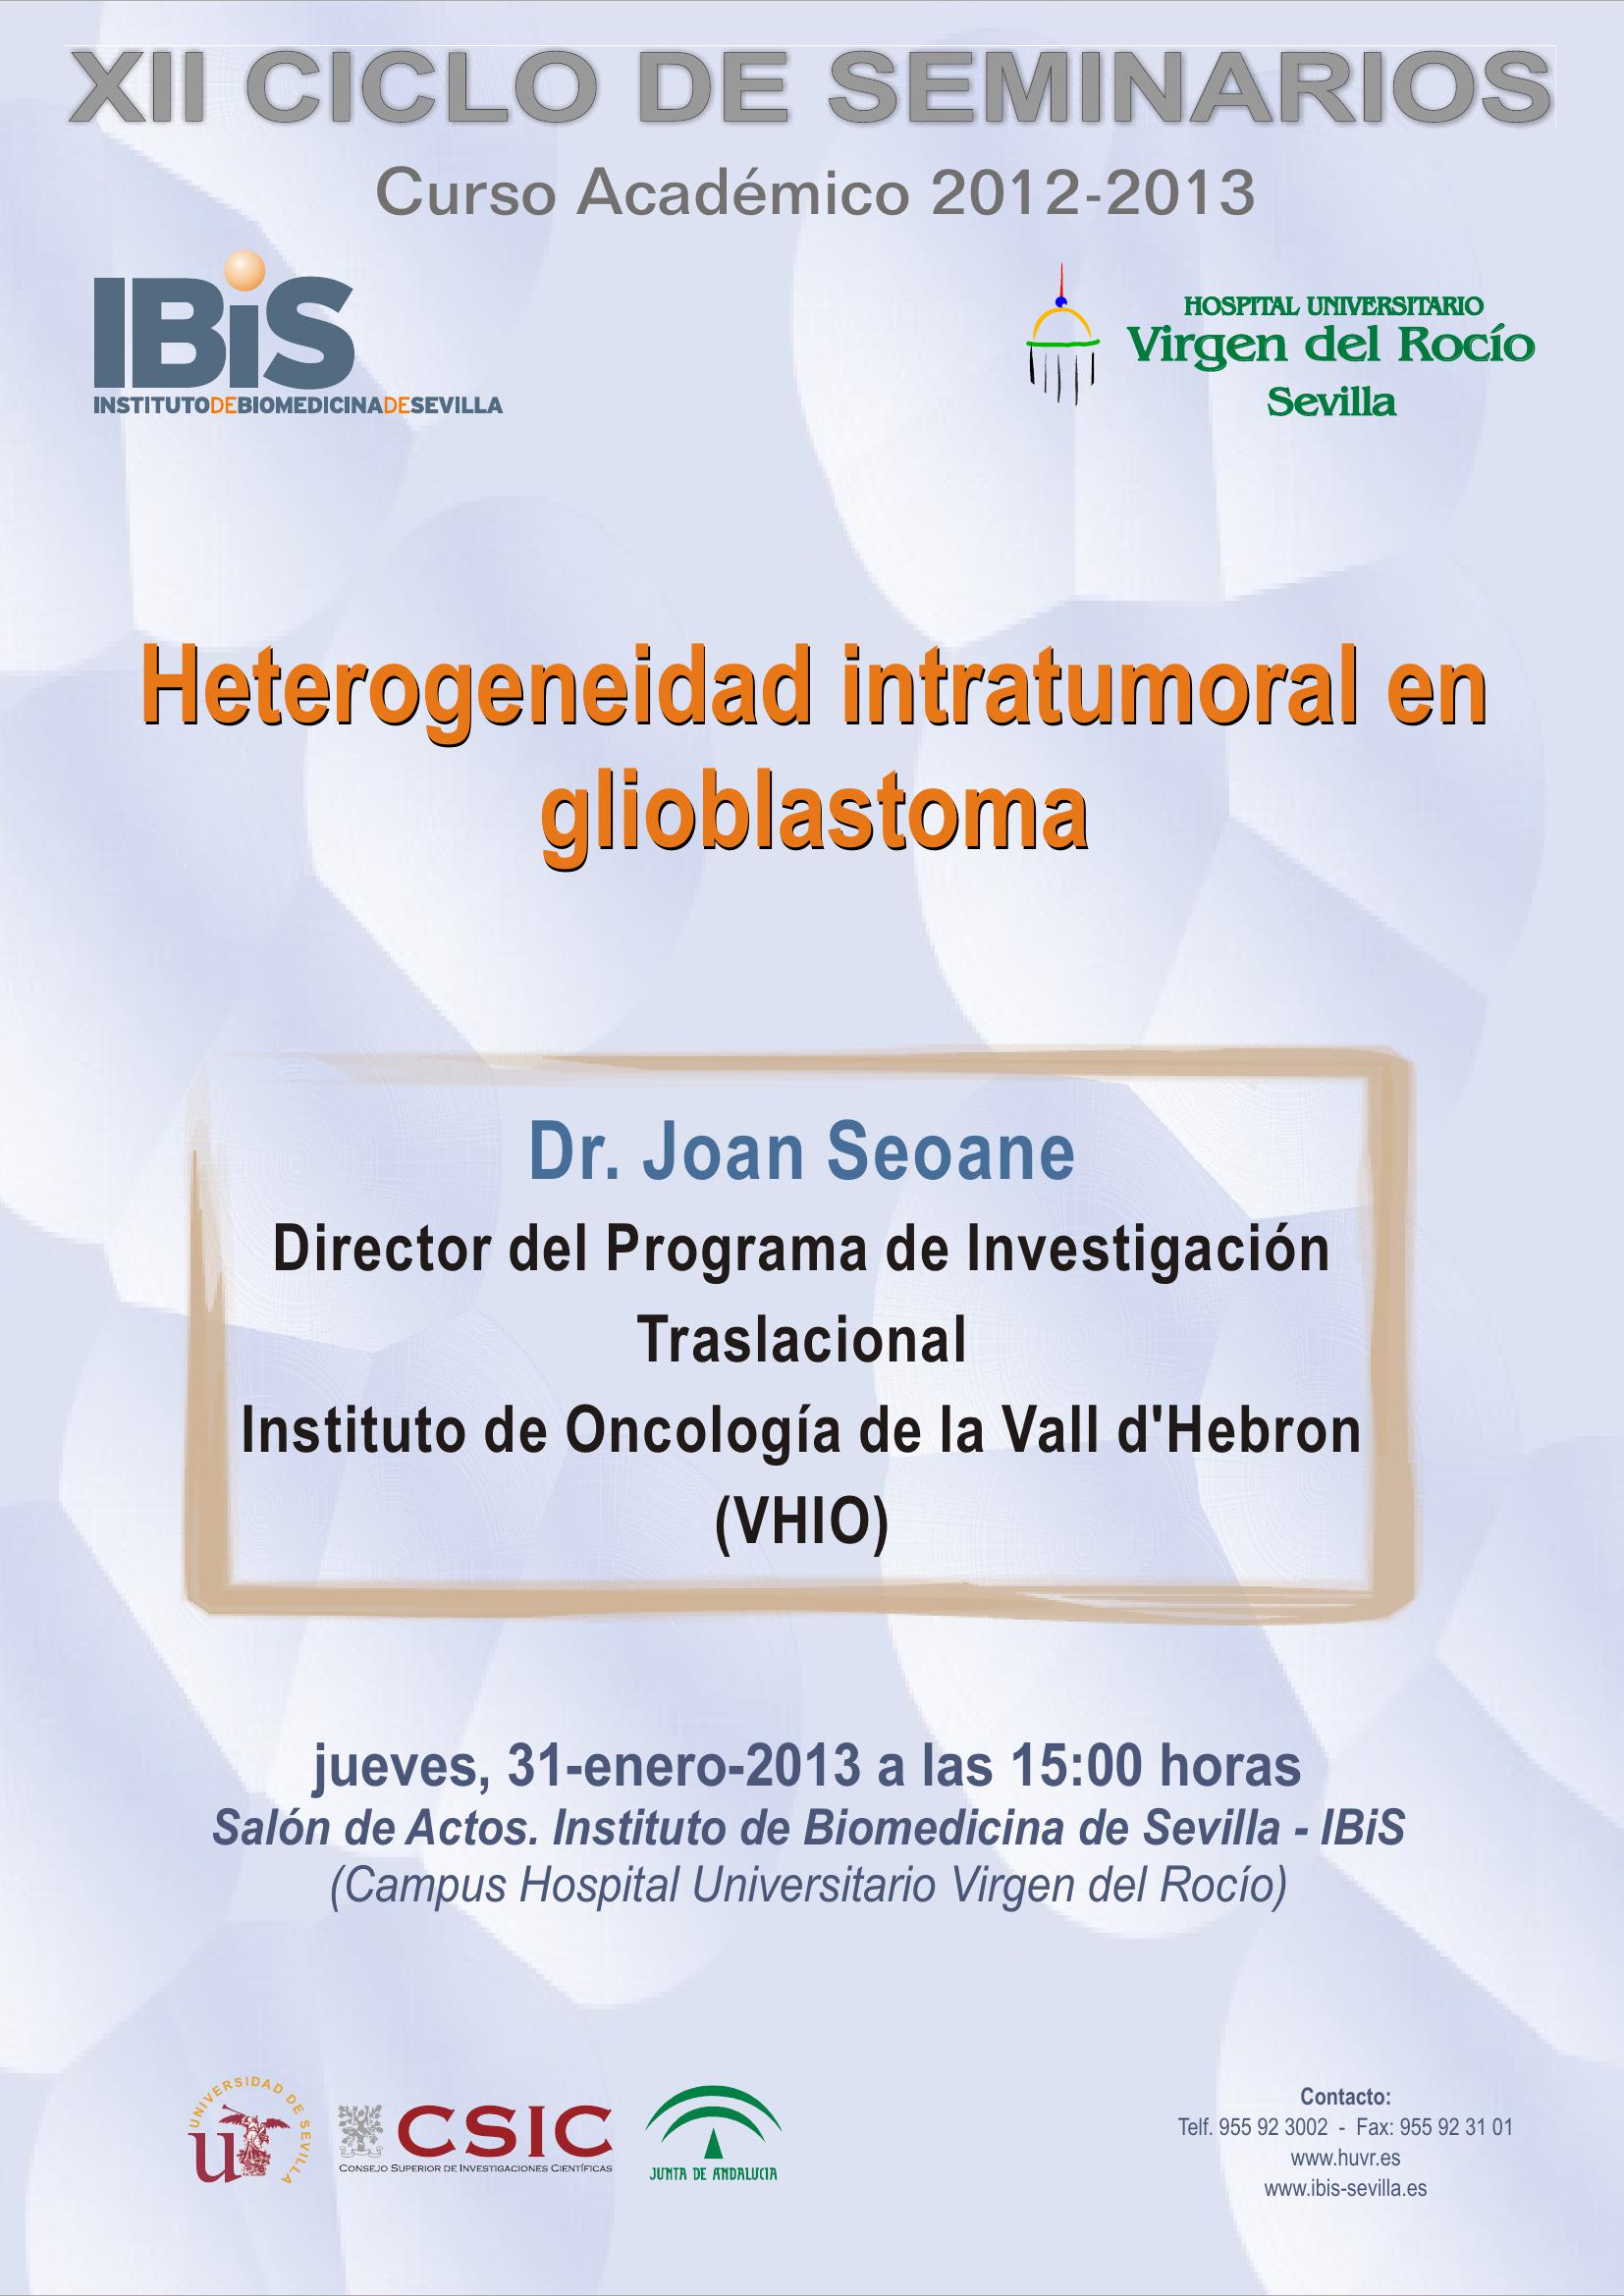 Poster: Heterogeneidad intratumoral en glioblastoma. CANCELADO